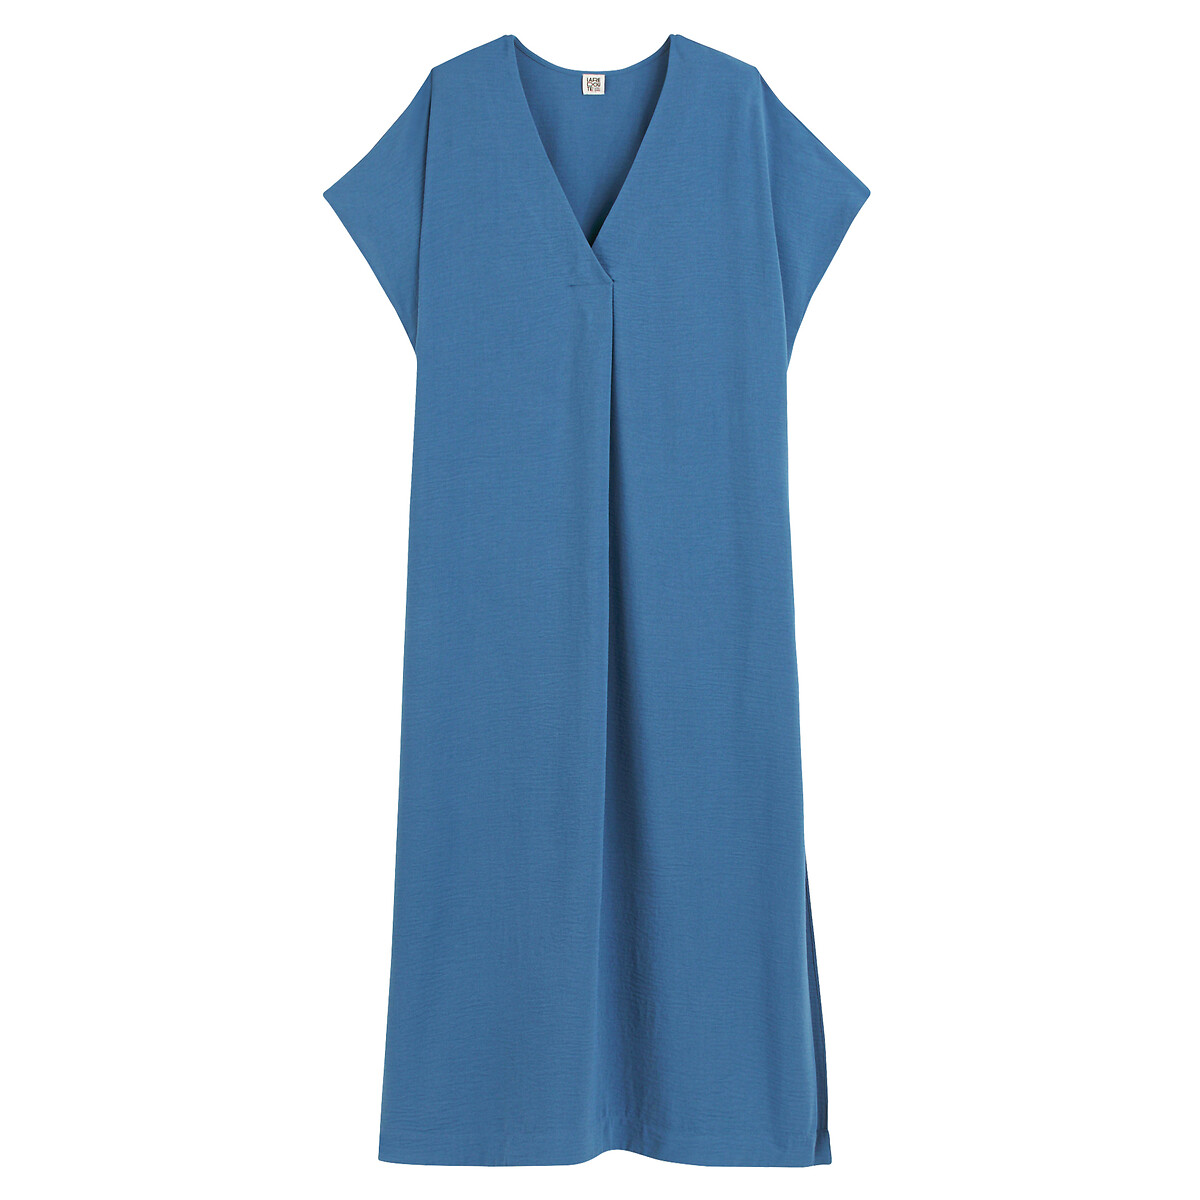 Платье длинное с V-образным вырезом короткими рукавами  L синий LaRedoute, размер L - фото 5